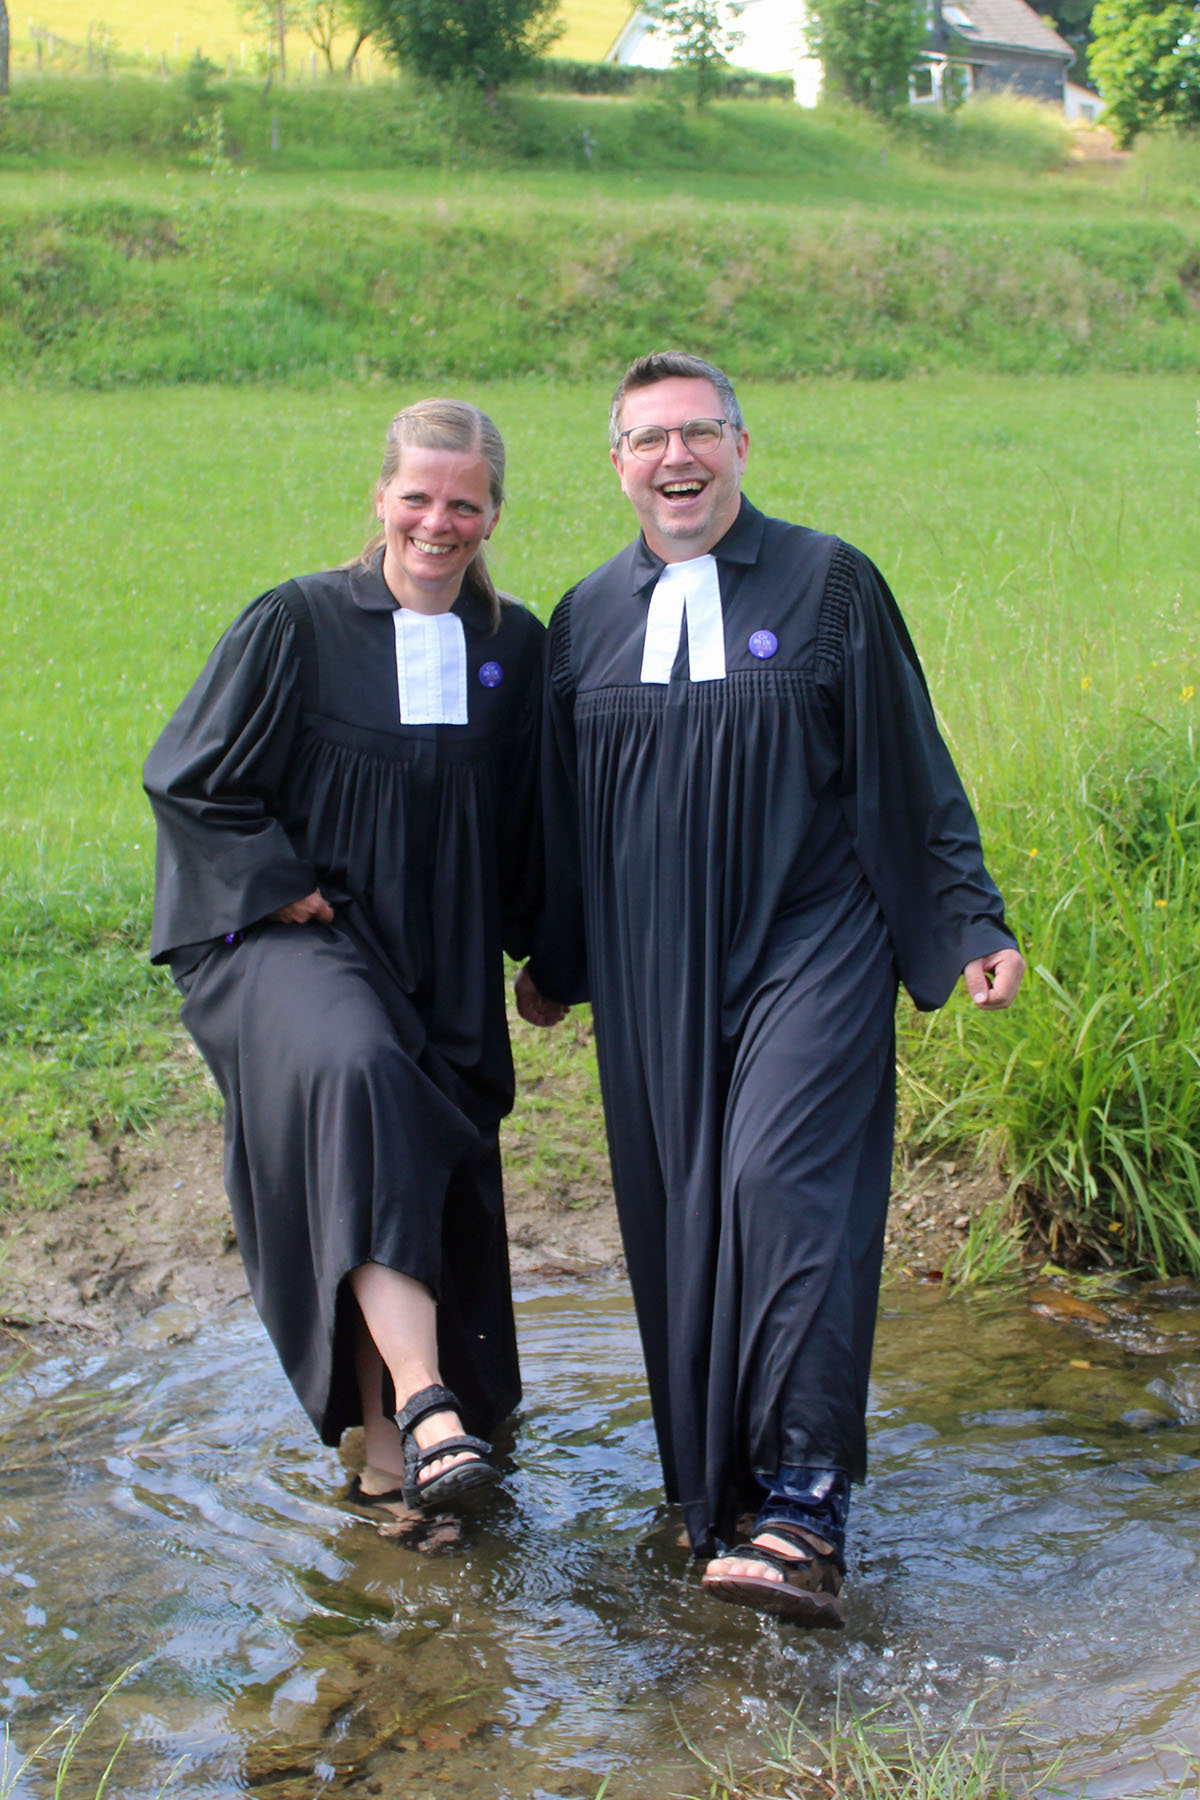 So festlich wie die Talare und so fröhlich wie die Gesichter von Kerstin Grünert und Jaime Jung war jetzt der Taufgottesdienst unter freiem Himmel am Birkelbach.